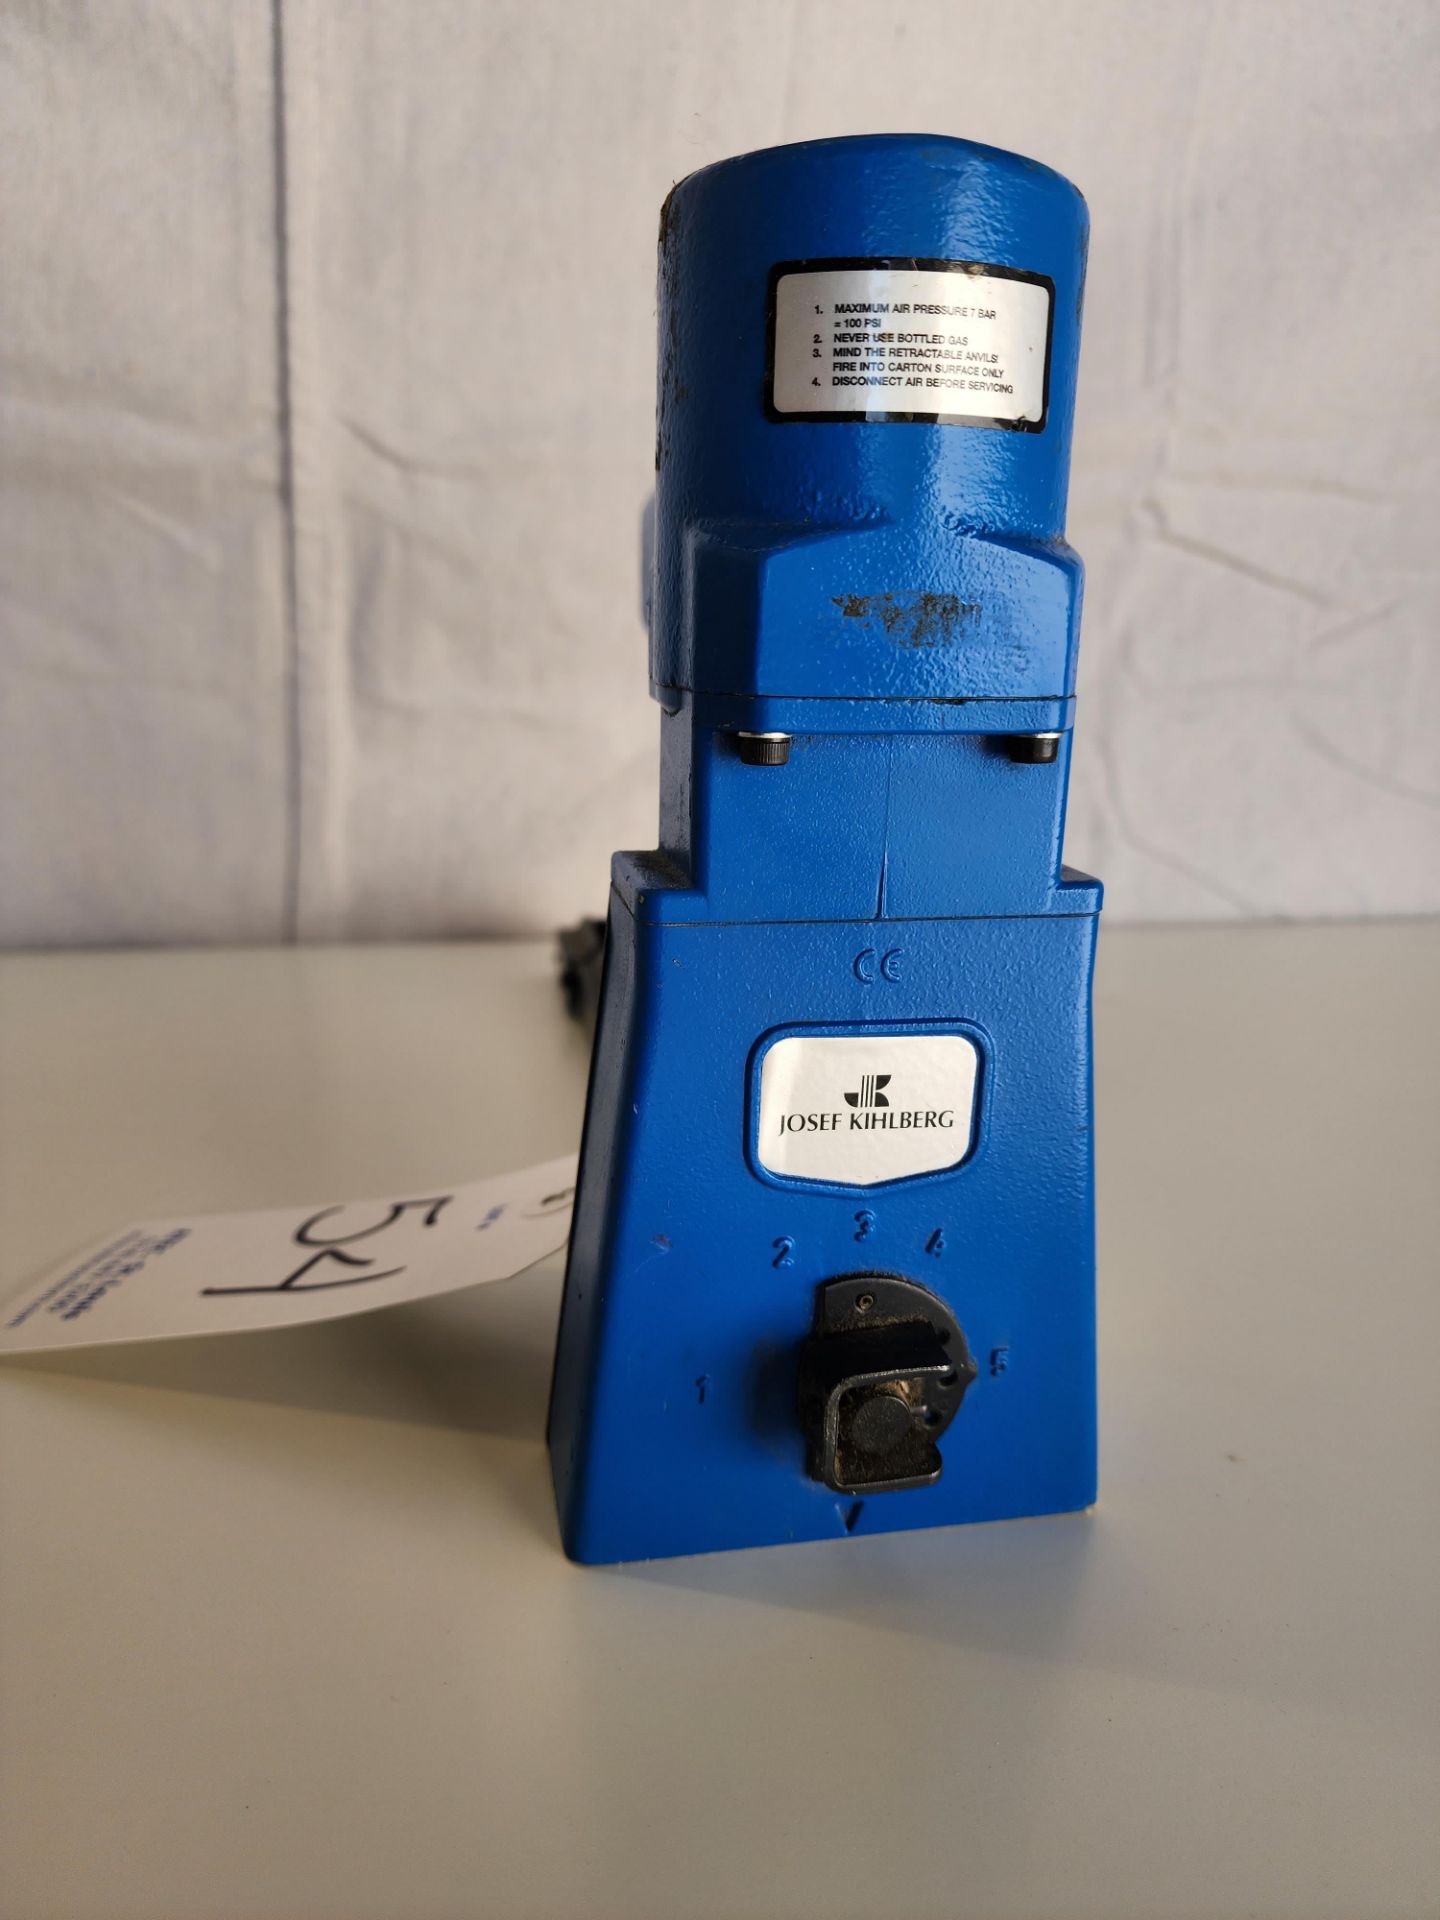 Josef Kihlberg Model 561-15PN Pneumatic Top Stapler w/User Manual - Image 5 of 5